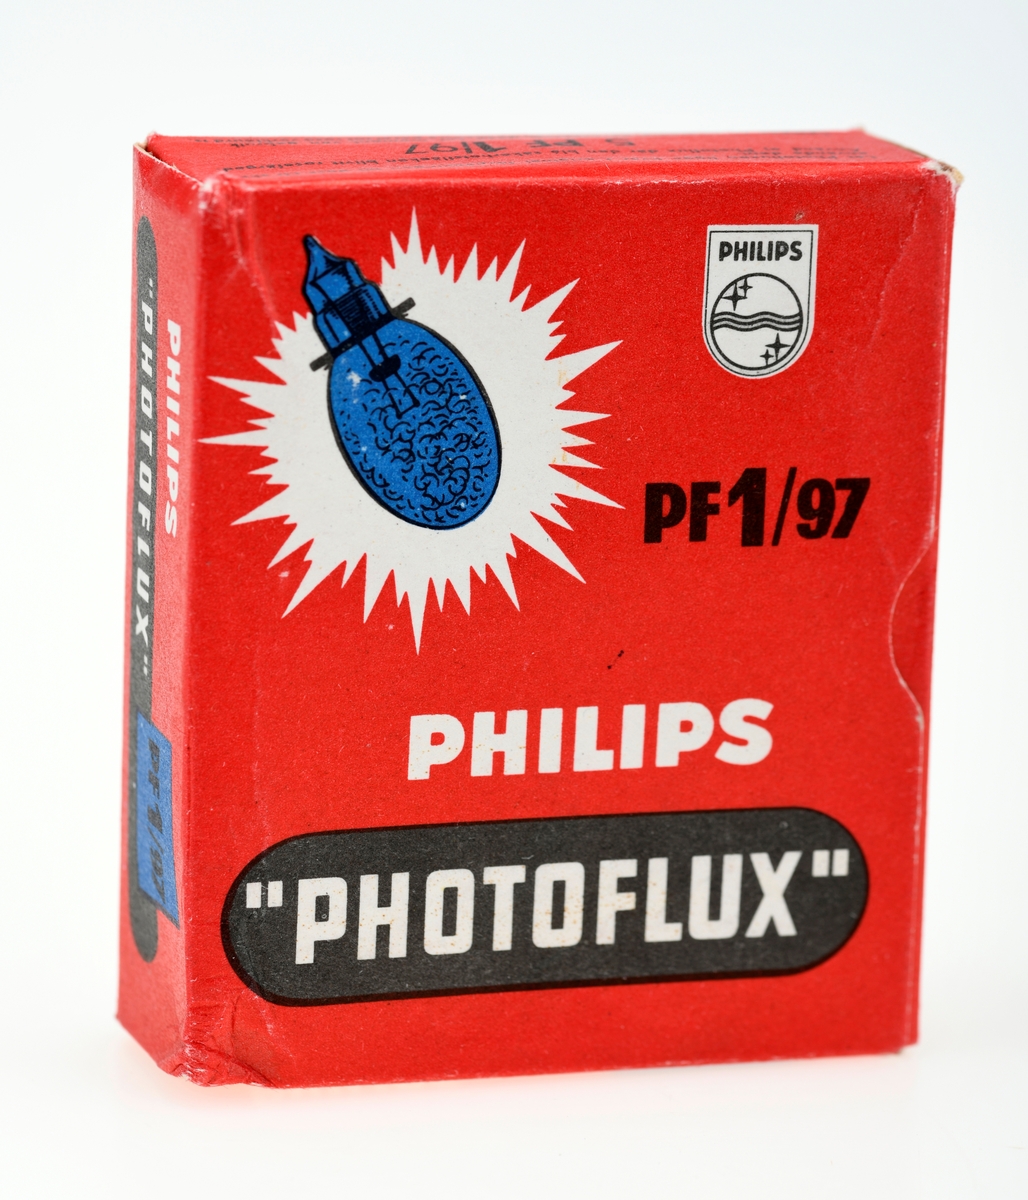 En eske med  fem ubrukte blitspærer av typen Philips Photoflux PF1/97. På esken er det tabell over kamerablender ved ulike avstander og filmtyper. Pærene har et blått felt inni pæra som indikerer at de er ubrukt, og dette feltet blir rosa ved bruk. Pærene er lakkert med et blått belegg for å unngå at de knuser ved bruk. 

Blitspærer ble først introdusert som en erstatning for blitspulver i 1929. Blitspærene er lagd for engangsbruk og er derfor pakket i esker med fem eller ti pærer. Pærer uten skrufot ble introdusert i 1954 og bidro til å senke prisen på pærene, og de har i stedet en ring som holder de to metalltrådene fra pæra på plass. De første blitspærene var klare, men fra midten av 50-tallet fikk pærene et blått belegg for å slippe å bruke filter på kameraet ved fargefotografering.